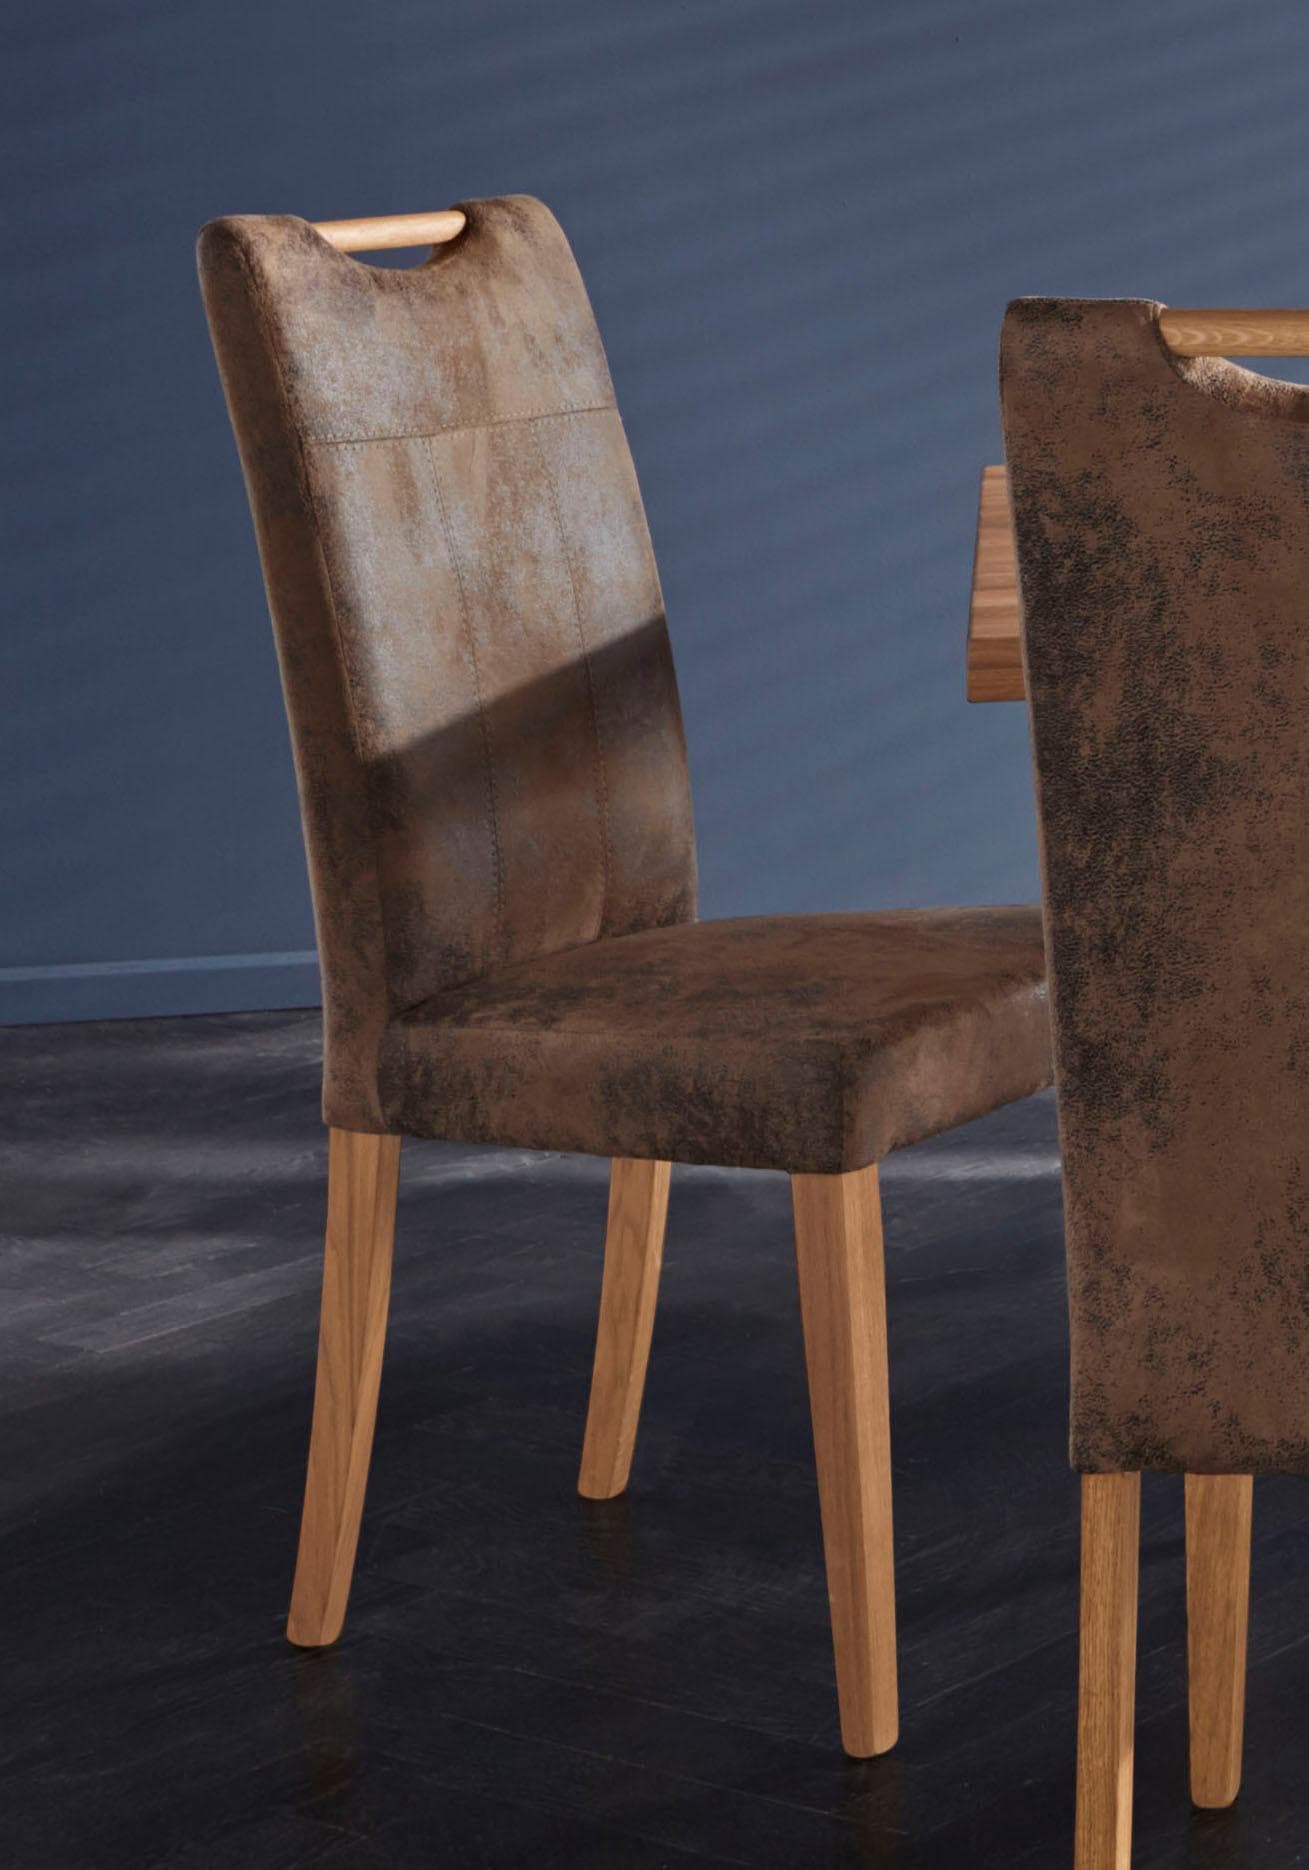 4-Fuss-Stühle Ackermann bei kaufen online